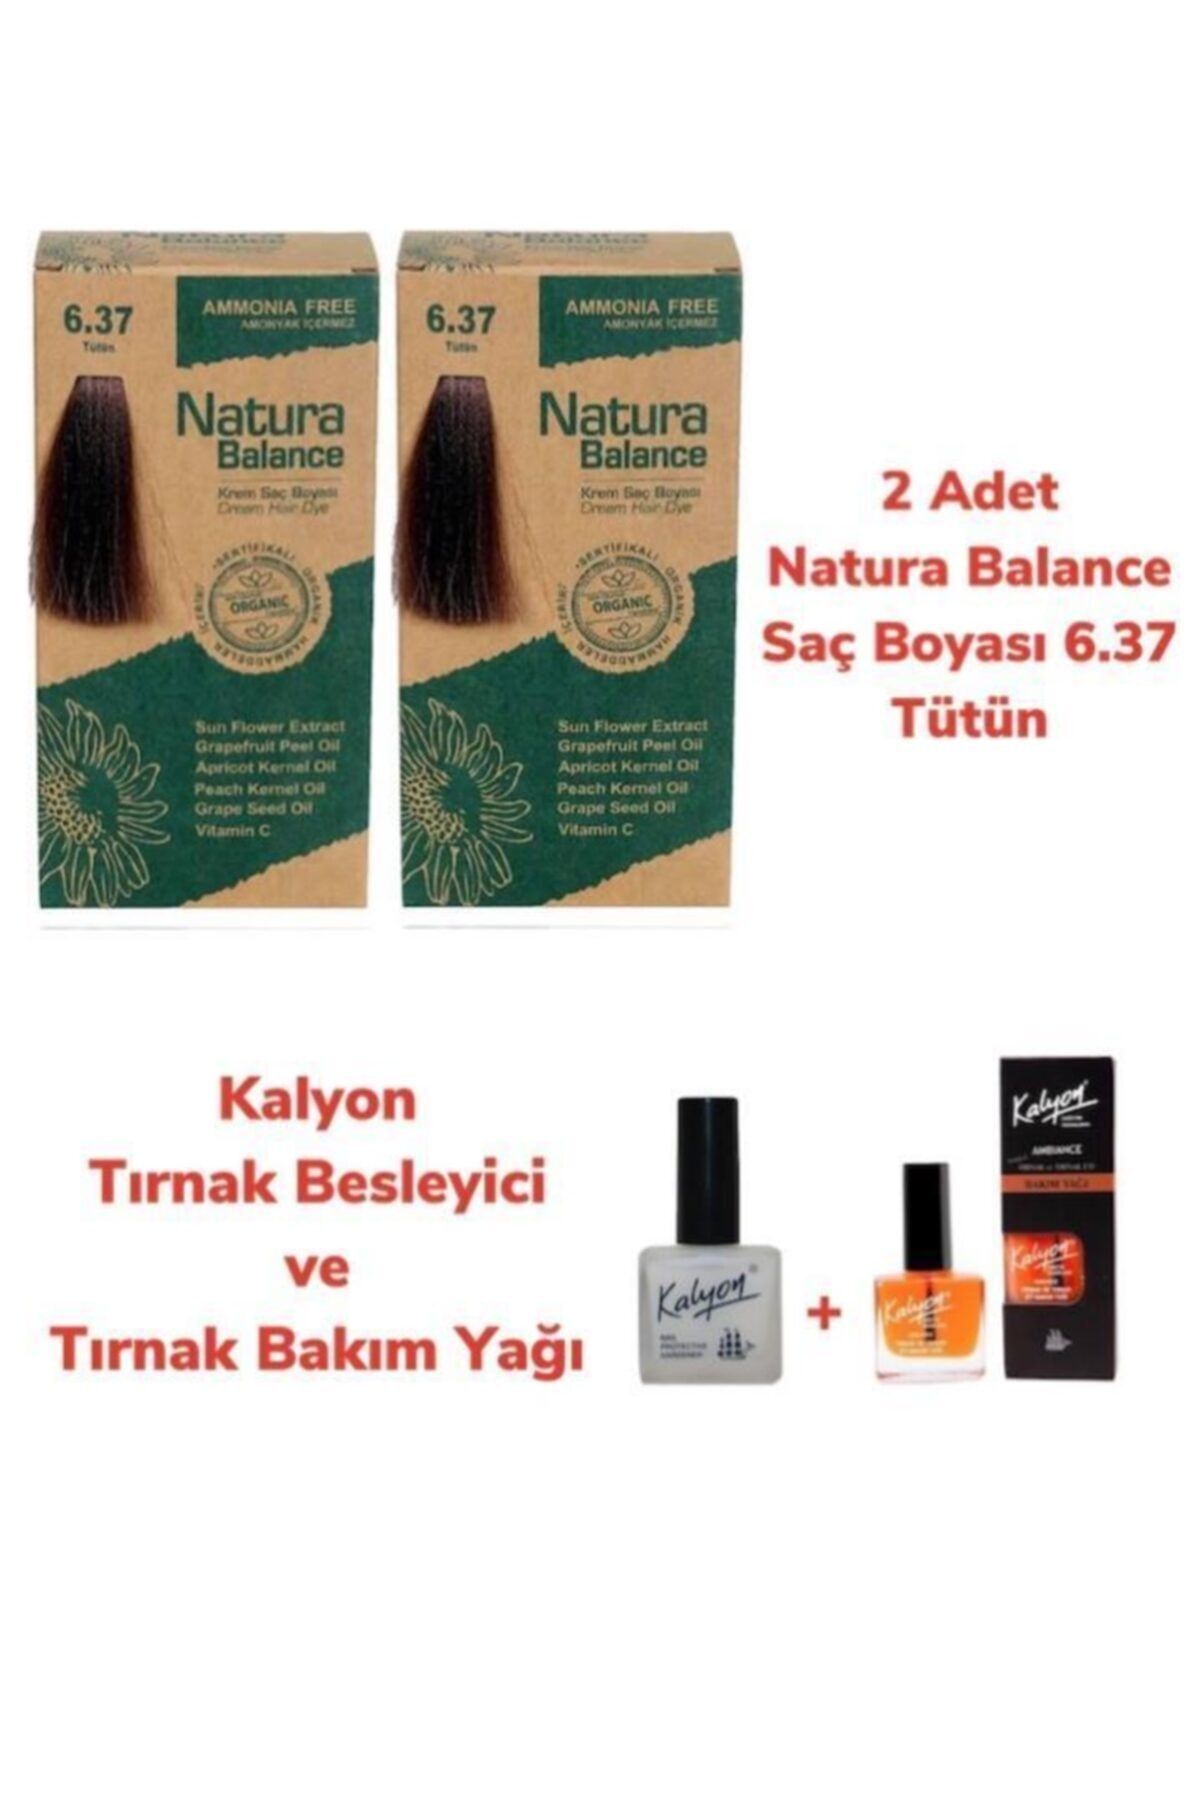 NATURABALANCE Balance Saç Boyası 6.37 Tütün 2 Adet + Kalyon Tırnak Besleyici Ve Bakım Yağı